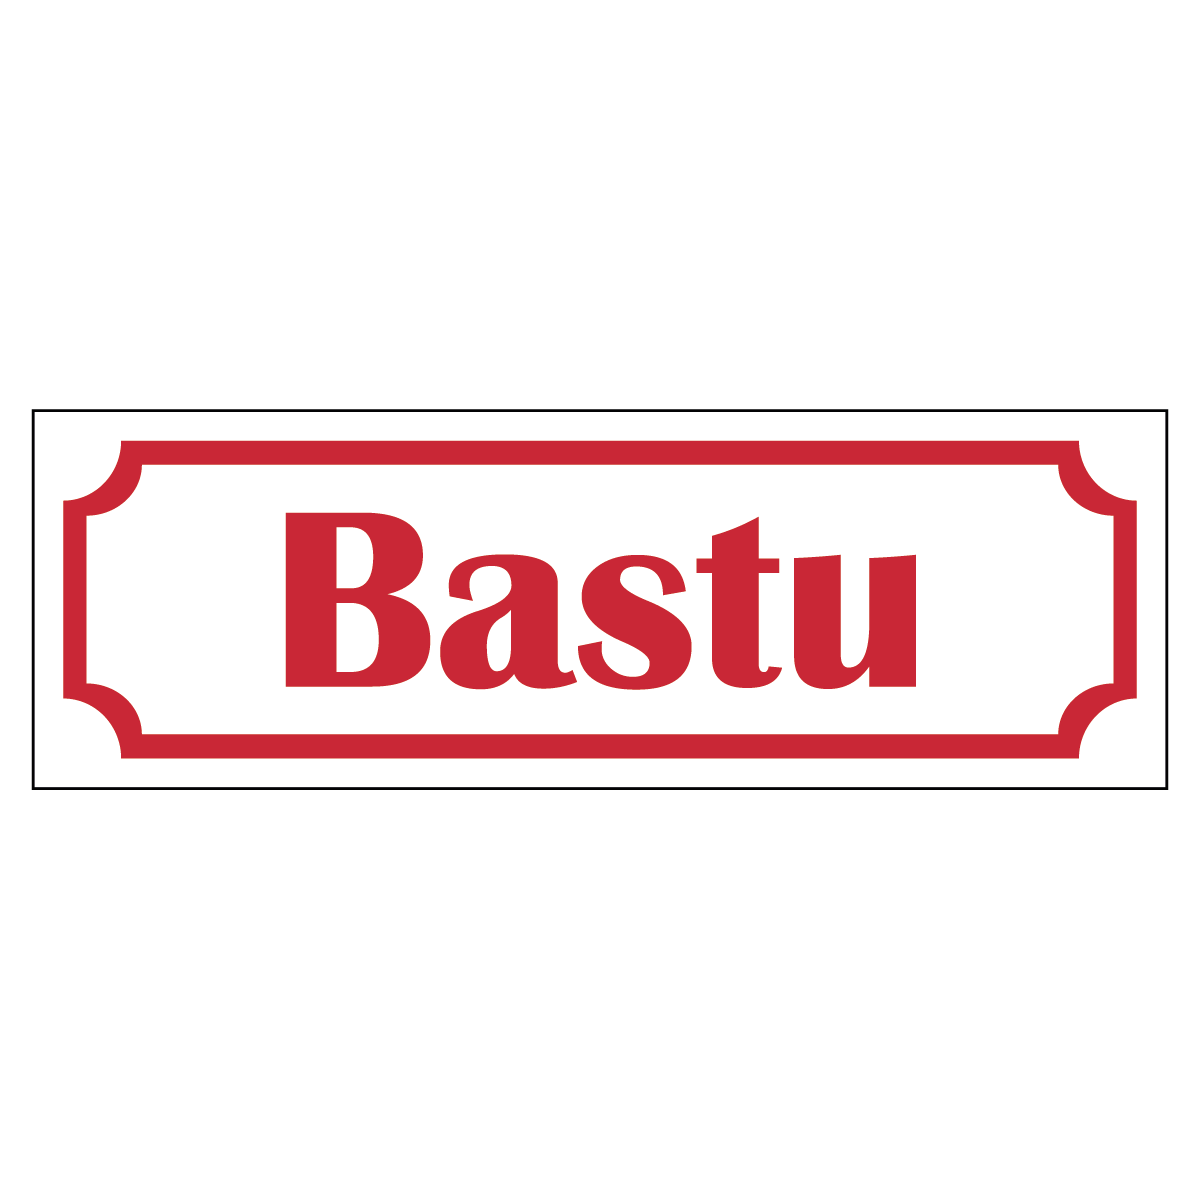 Bastu - Skylt - 150x50mm - Vit - Röd